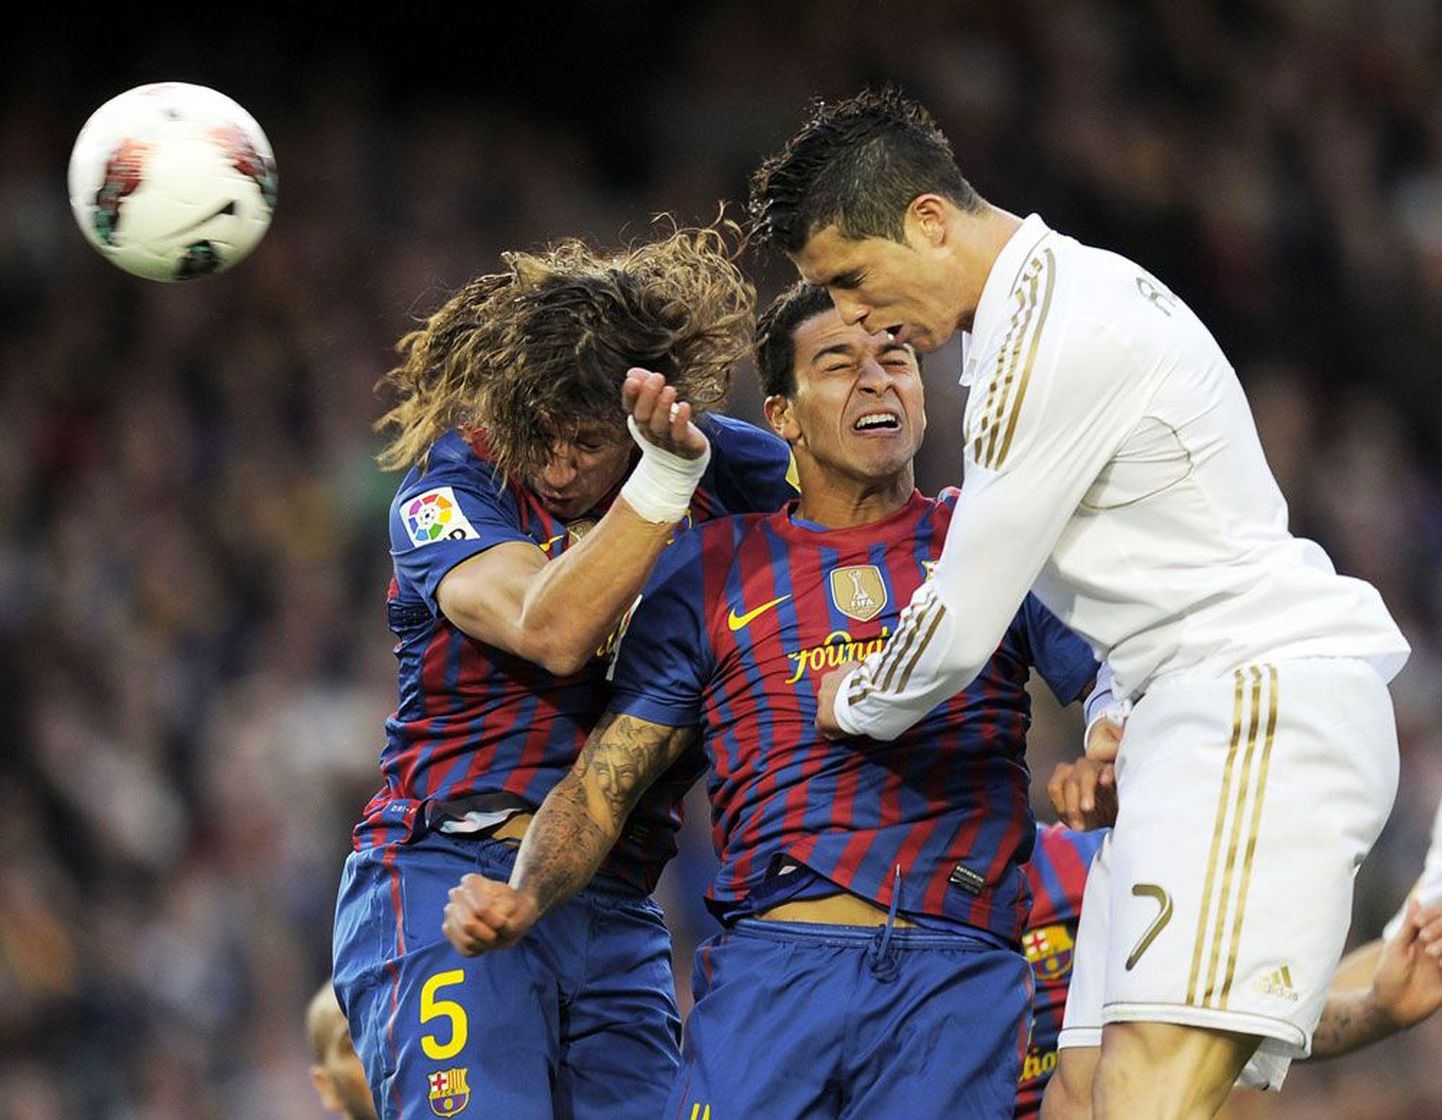 Suurepärases vormis Cristiano Ronaldo (valges) asub samuti heas hoos olevat  Barcelona kaitseliini murdma.